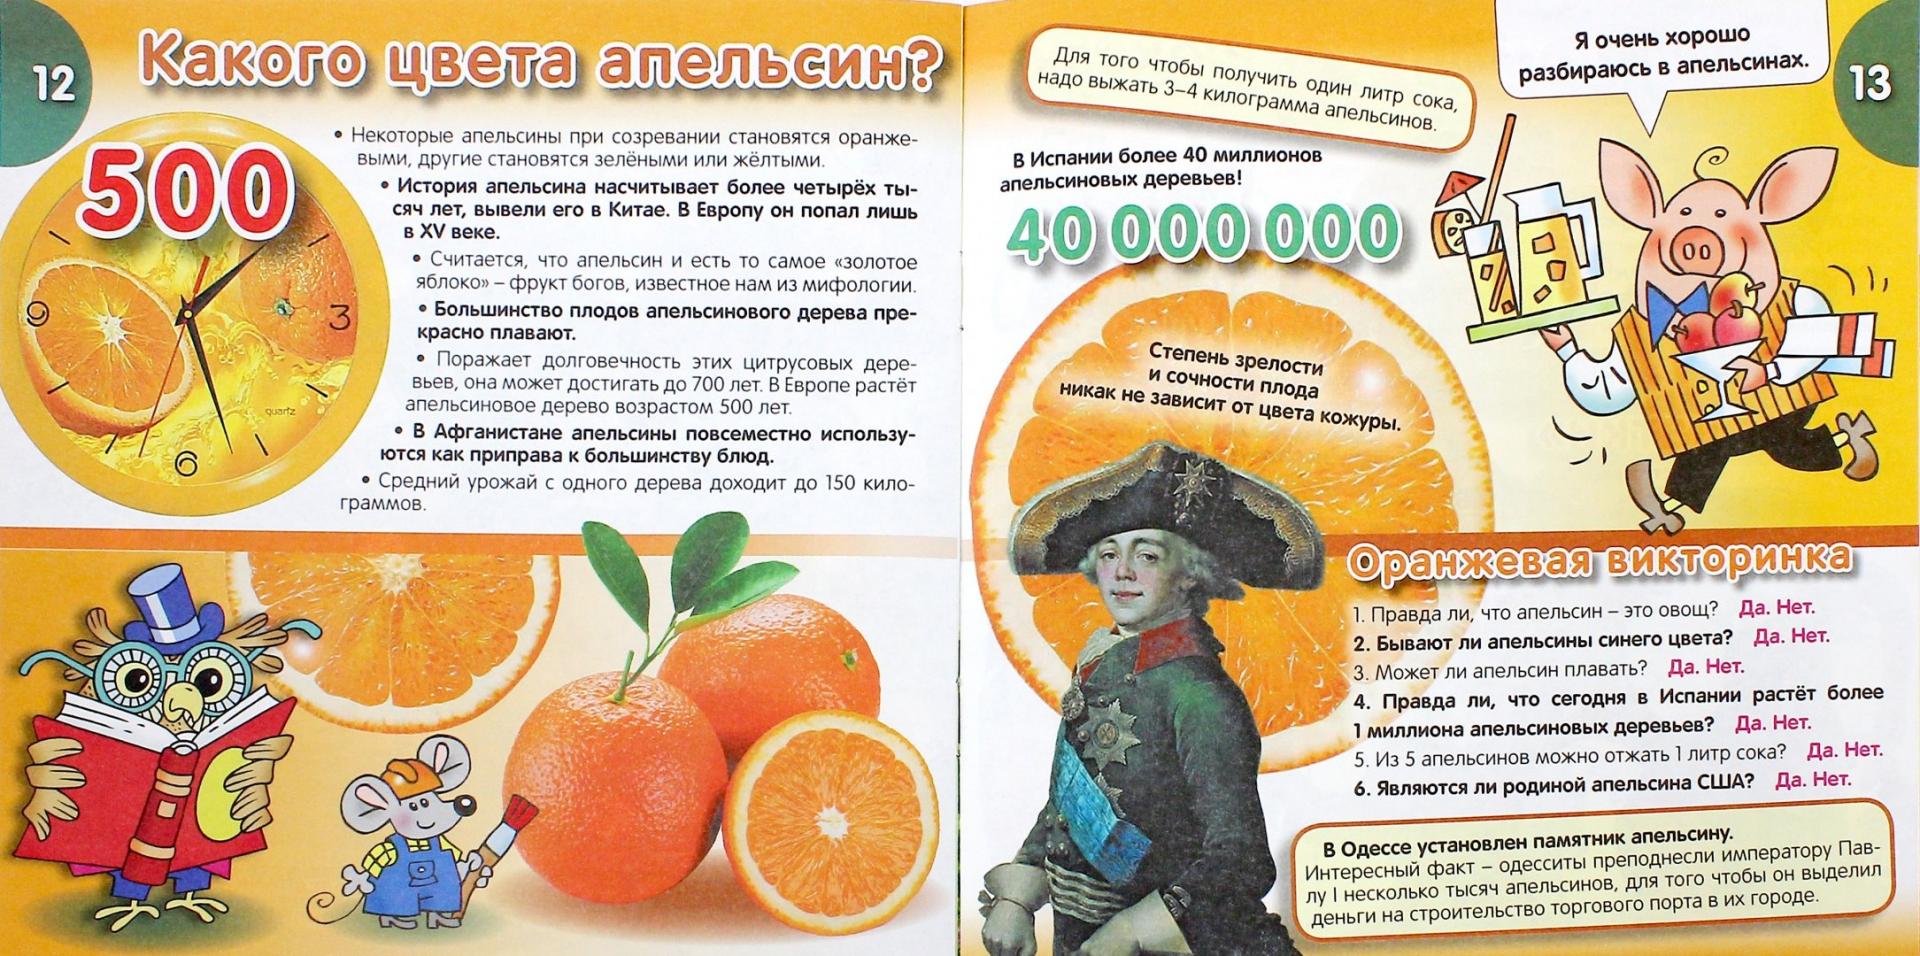 Иллюстрация 1 из 4 для Какого цвета апельсин? - Даниил Колодинский | Лабиринт - книги. Источник: Лабиринт